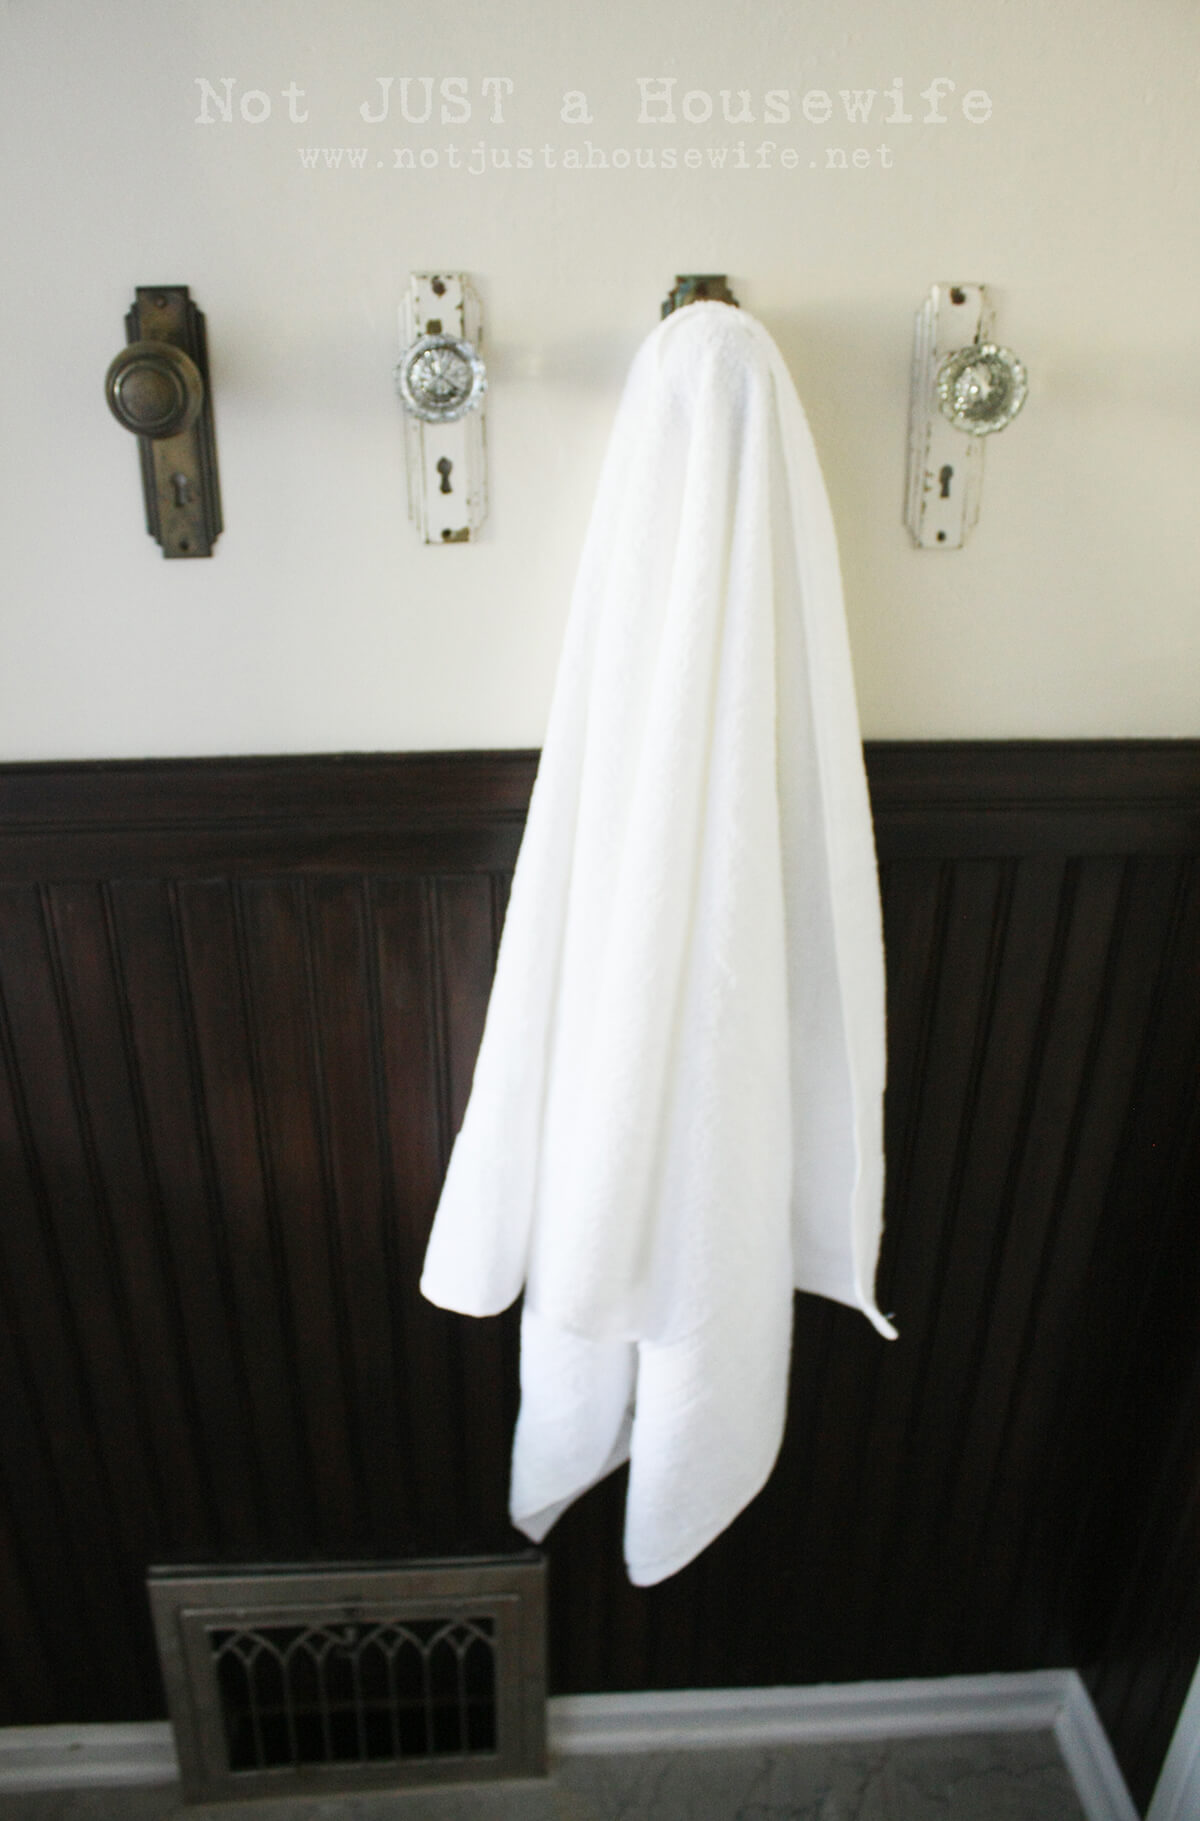 14 Practical DIY Towel Rack Ideas For Your Bathroom